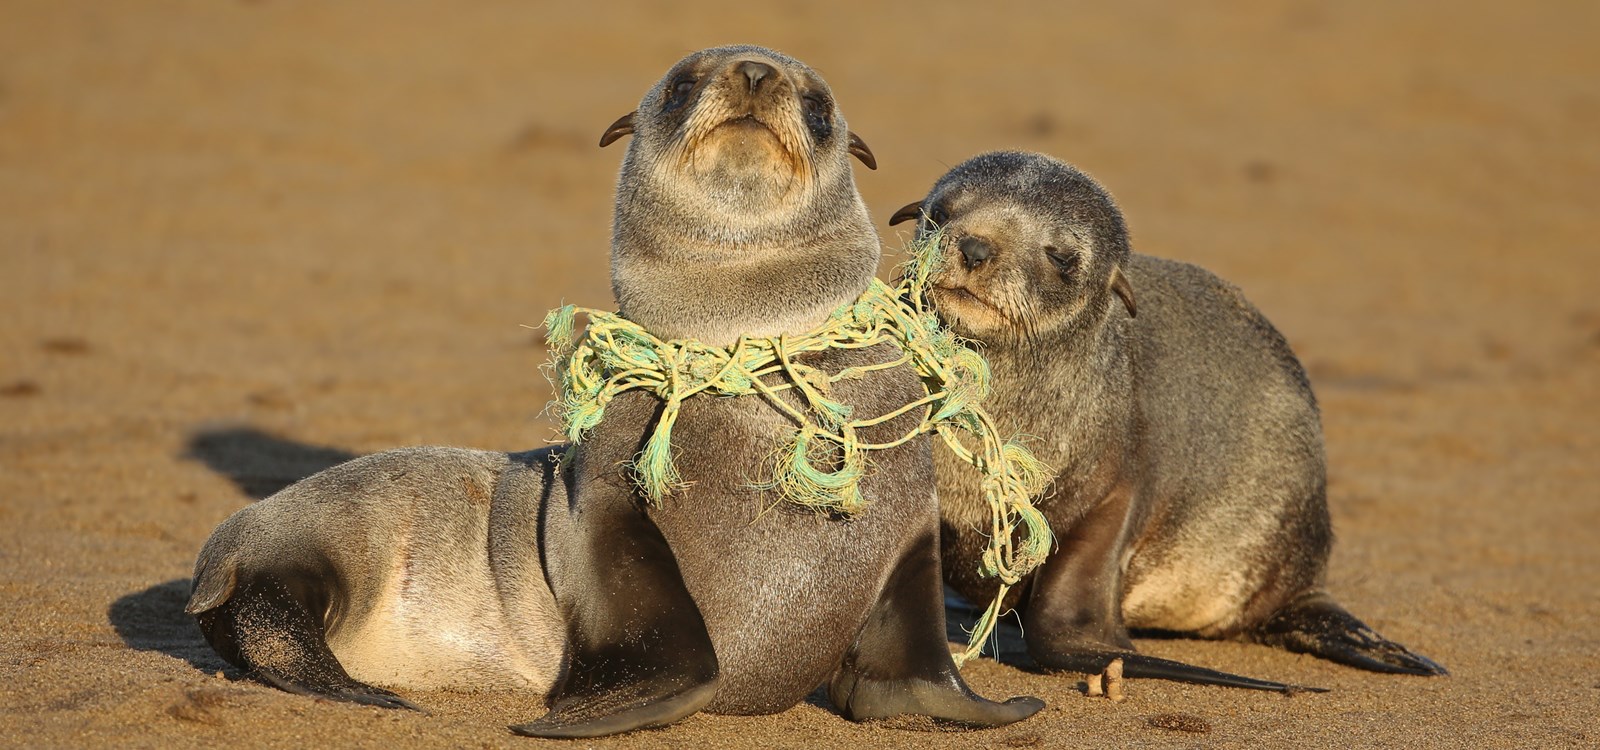 Årets aksjon går til WWF sitt arbeid med å redusere plast i havet. Foto: Jamie Lamb - elusive-images.co.uk / Getty Images